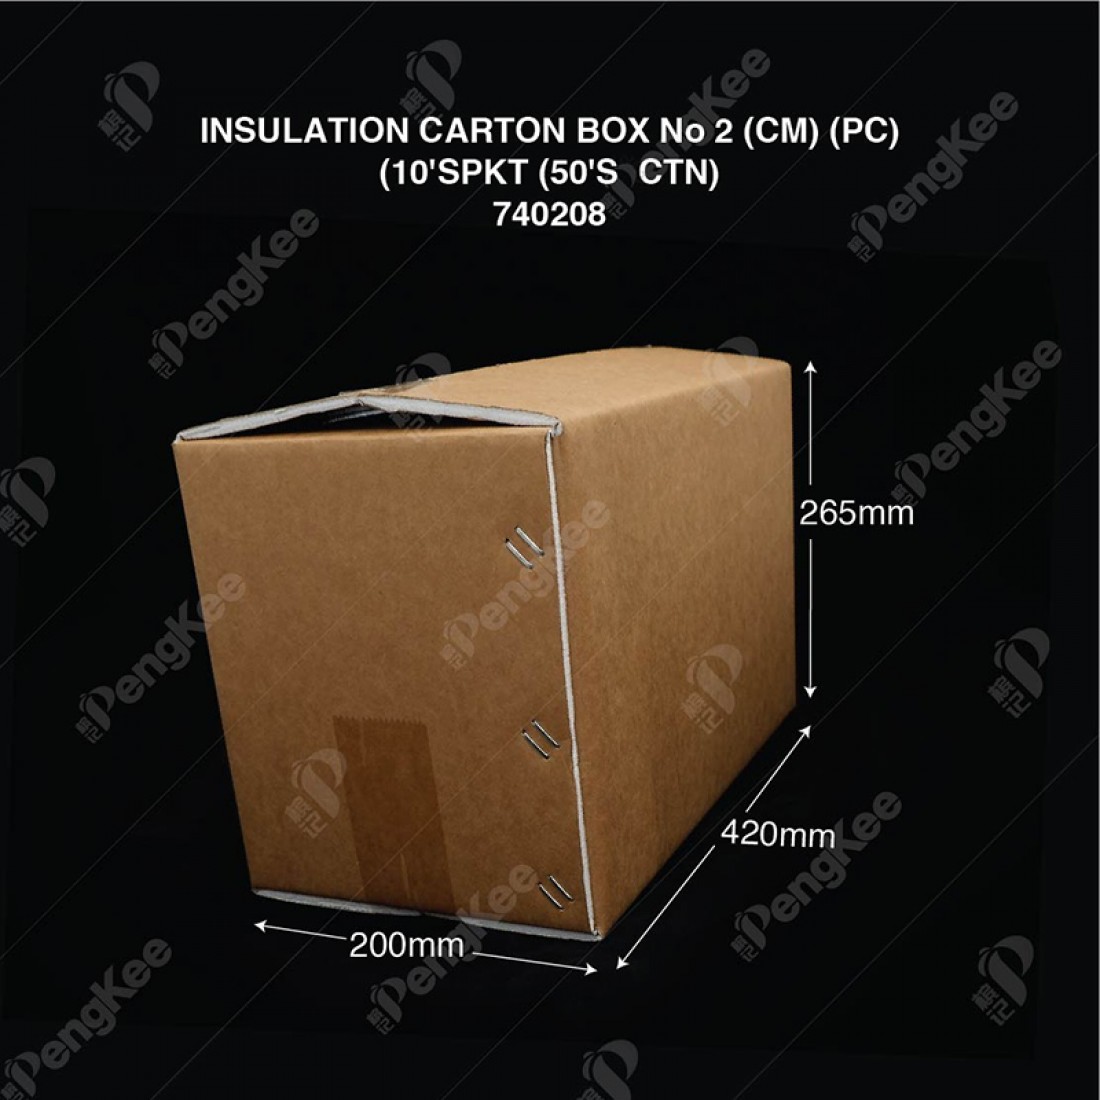 INSULATION CARTON BOX No 2 (CM) (PC) (10'S/PKT)